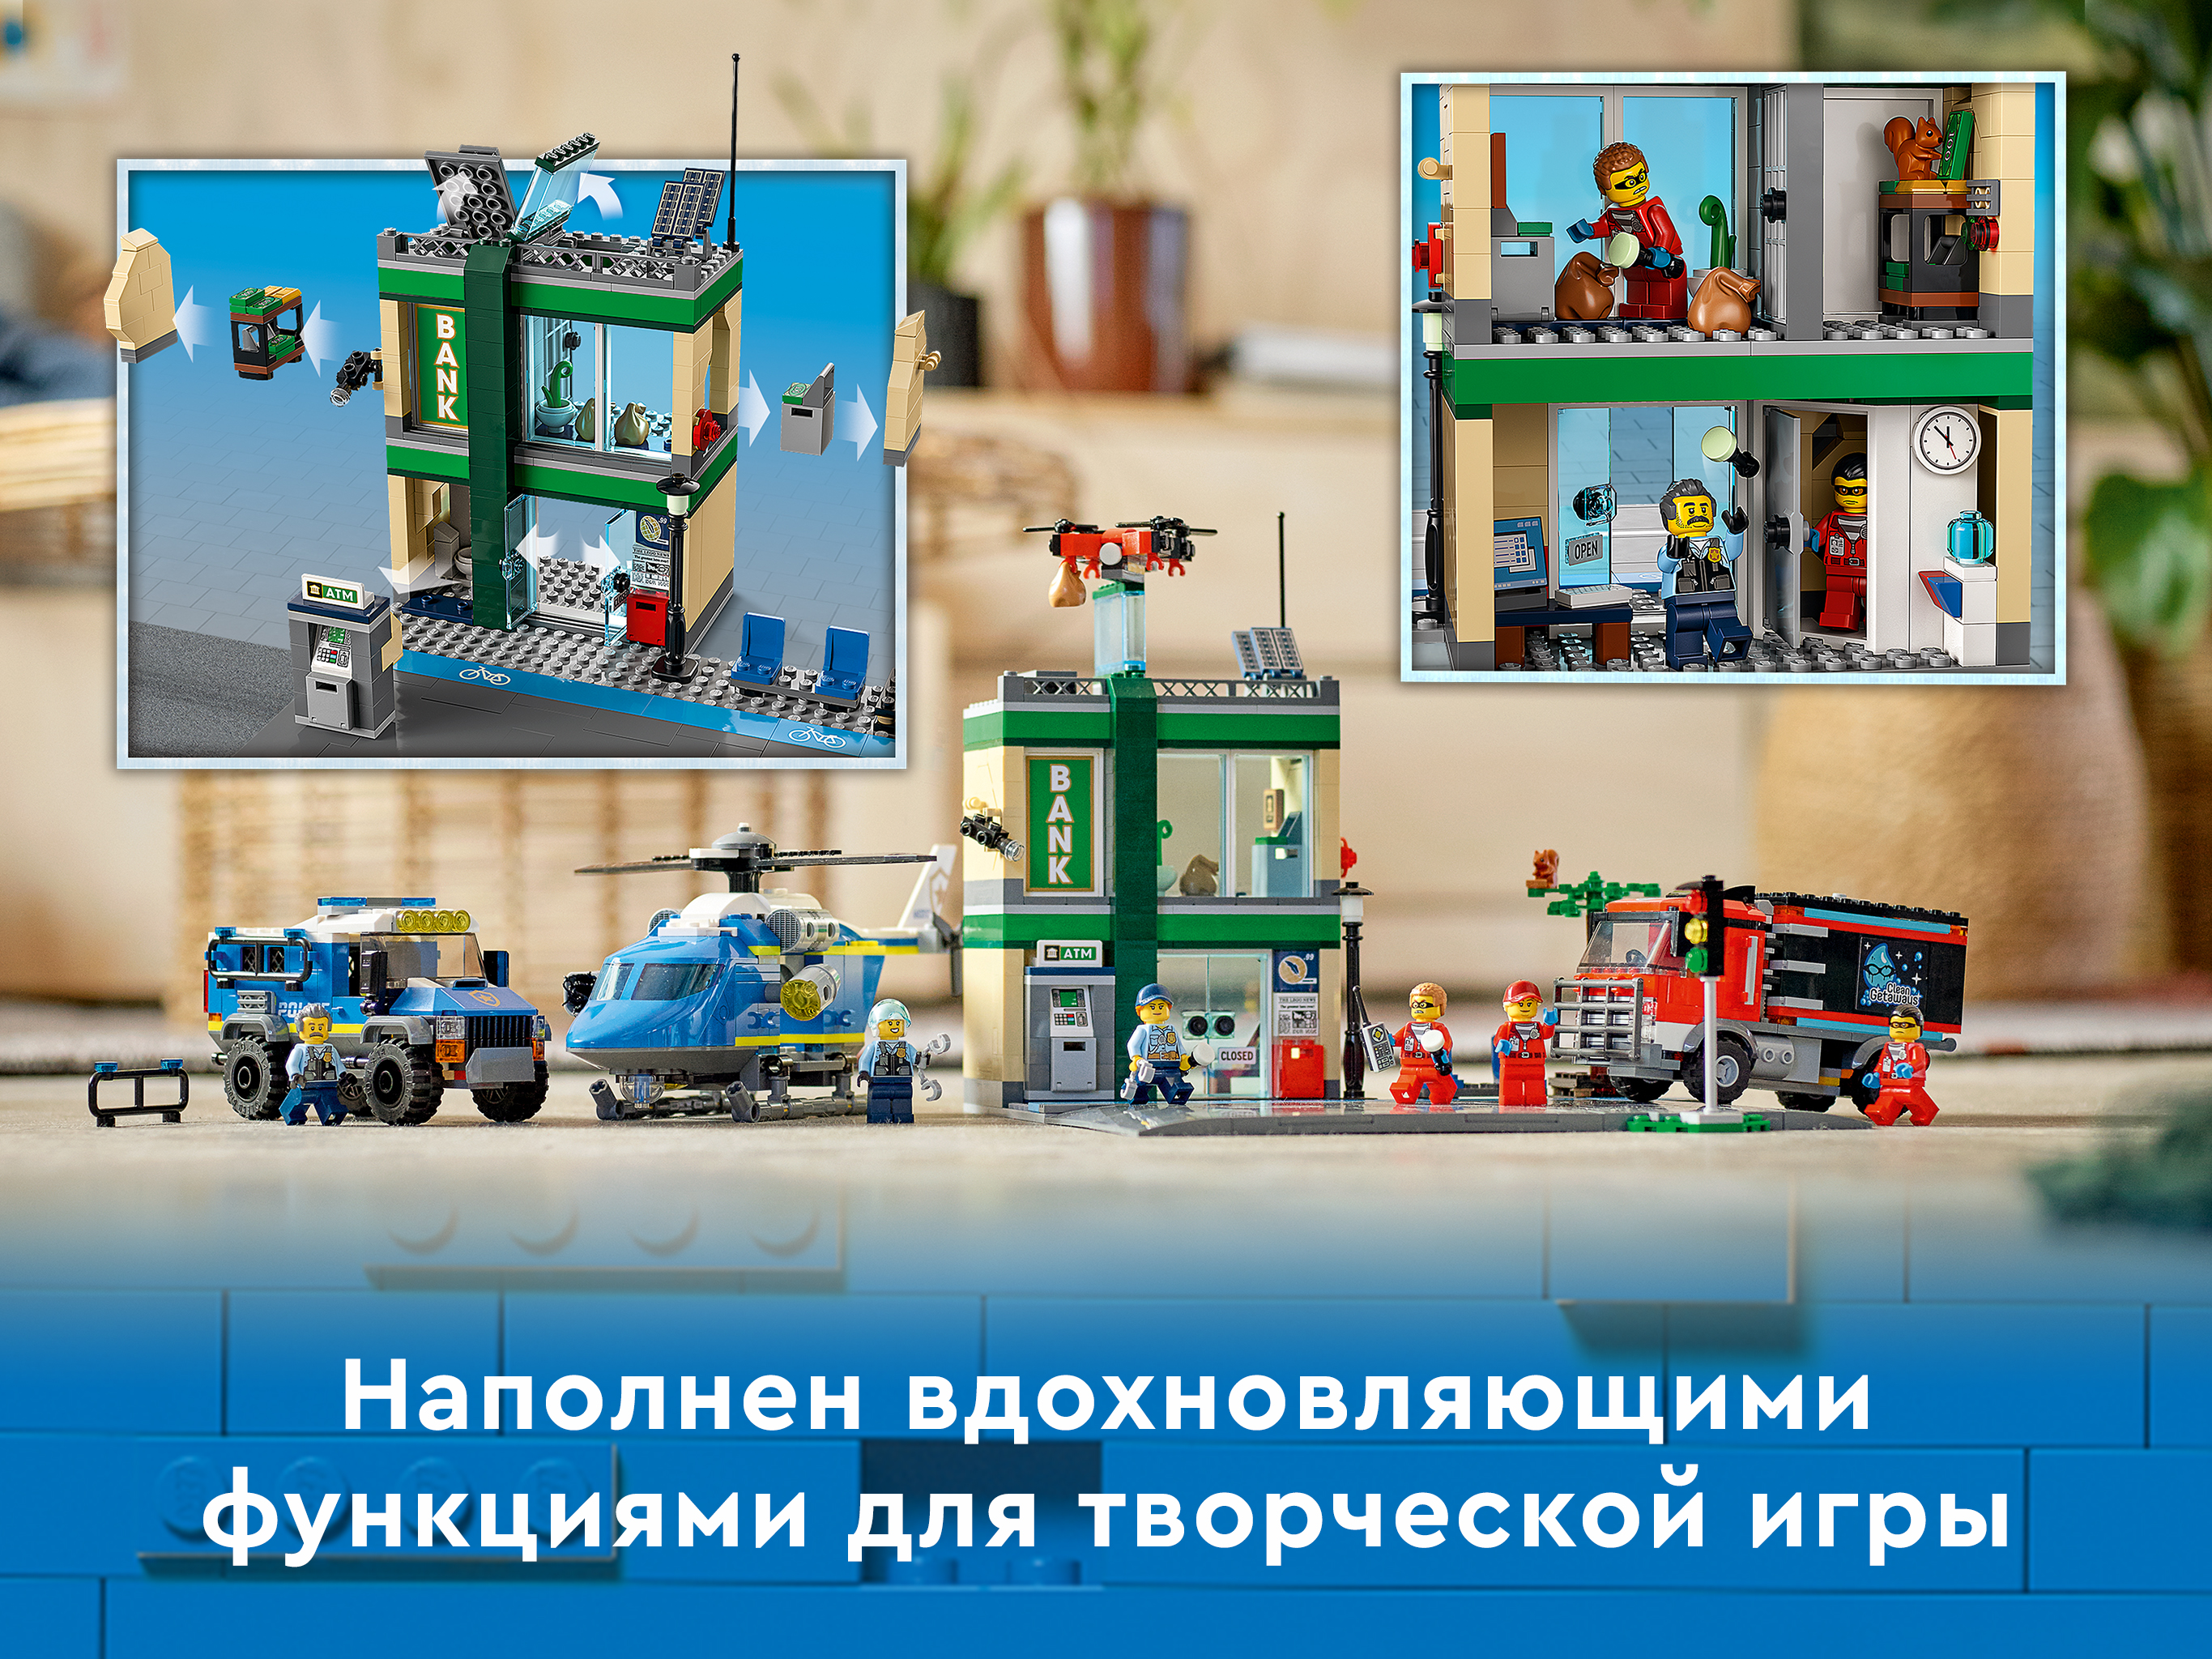 Конструктор LEGO City Police 60317 Полицейская погоня в банке